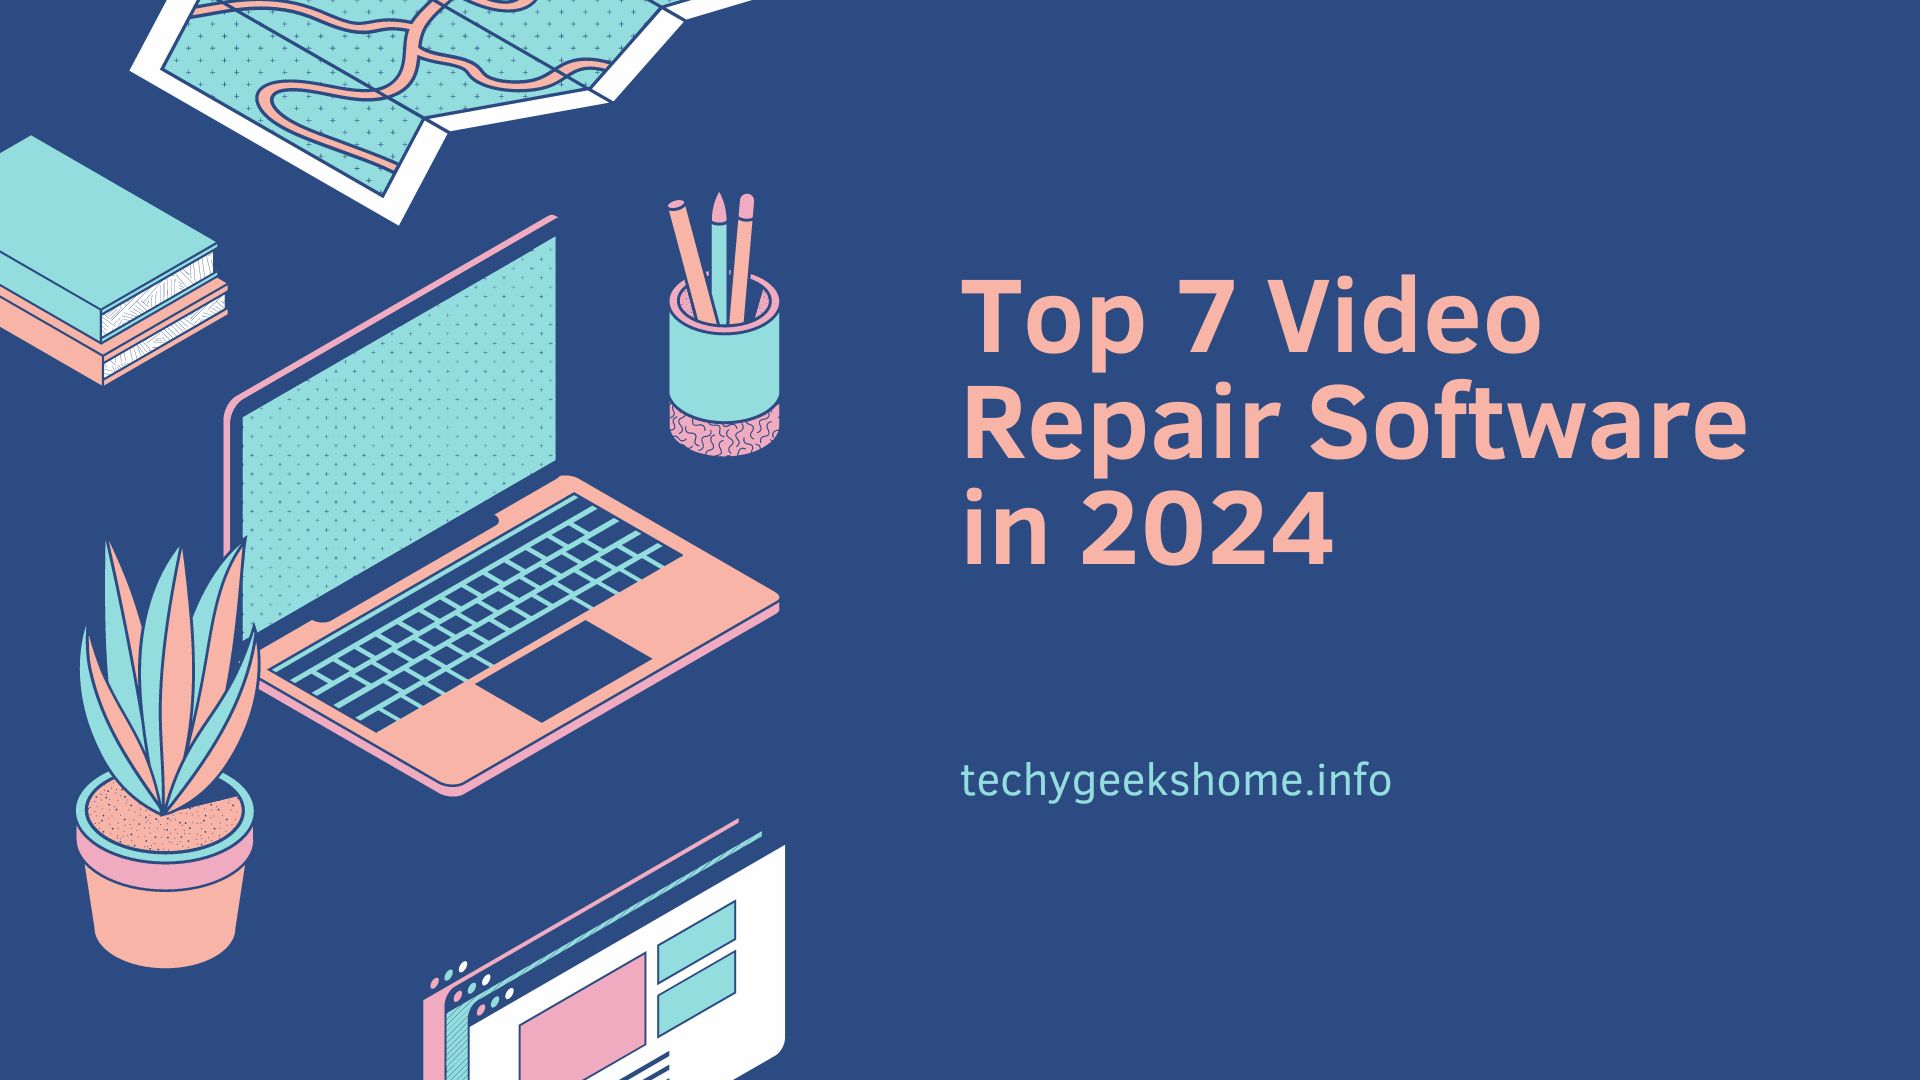 Top 7 Video Repair Software in 2024